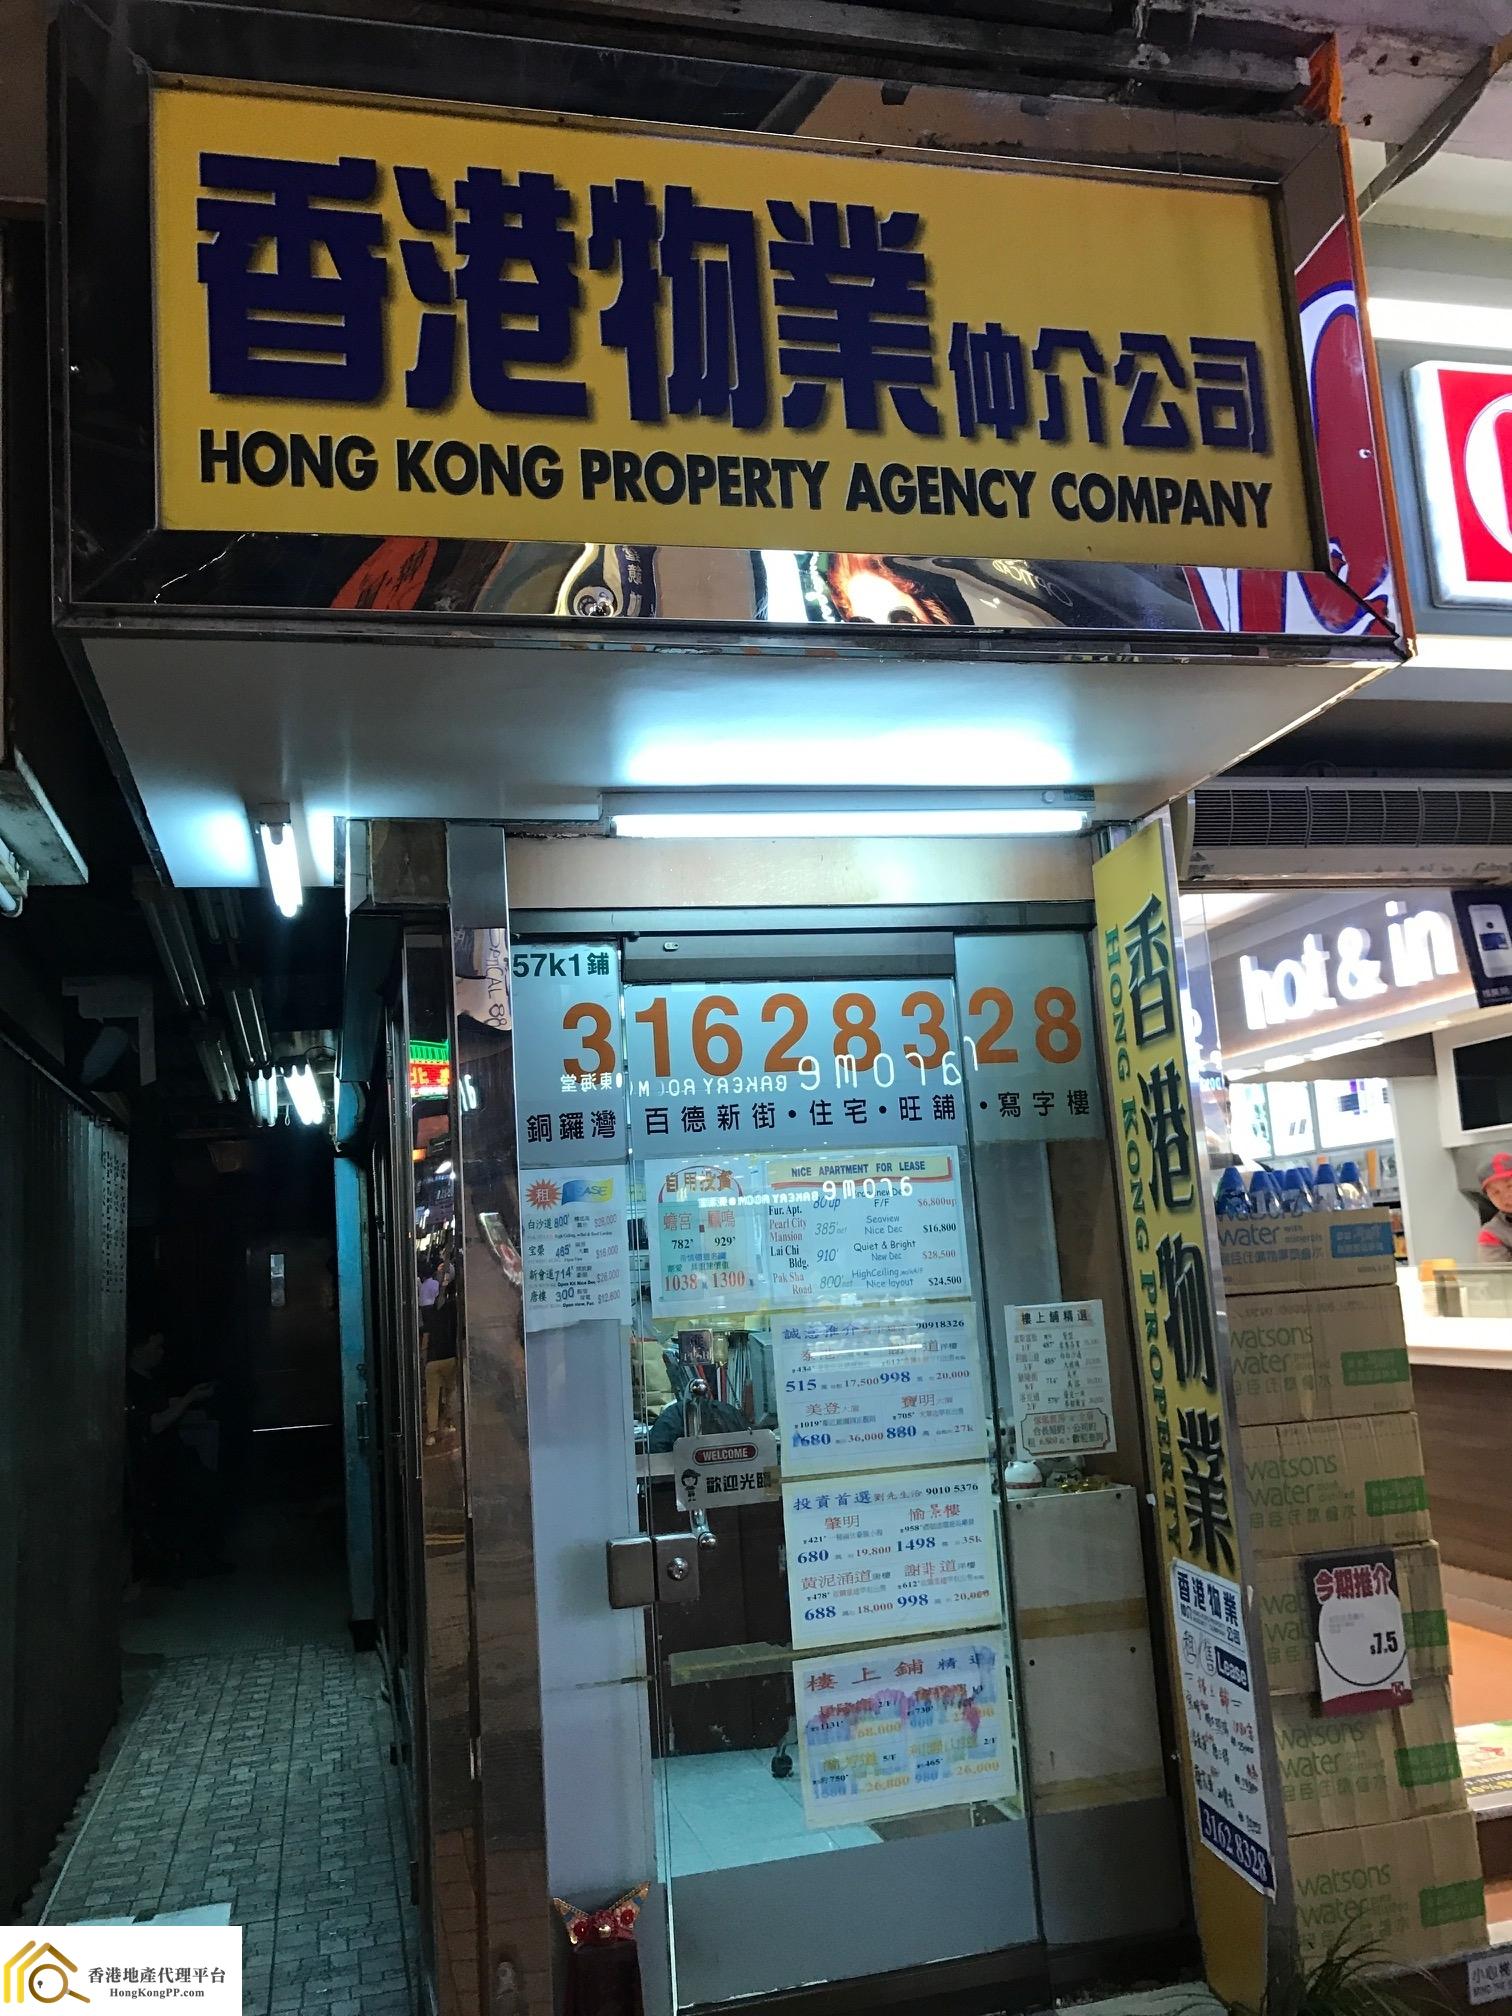 商舖地產代理: 香港物業仲介 Hong Kong Property Agency